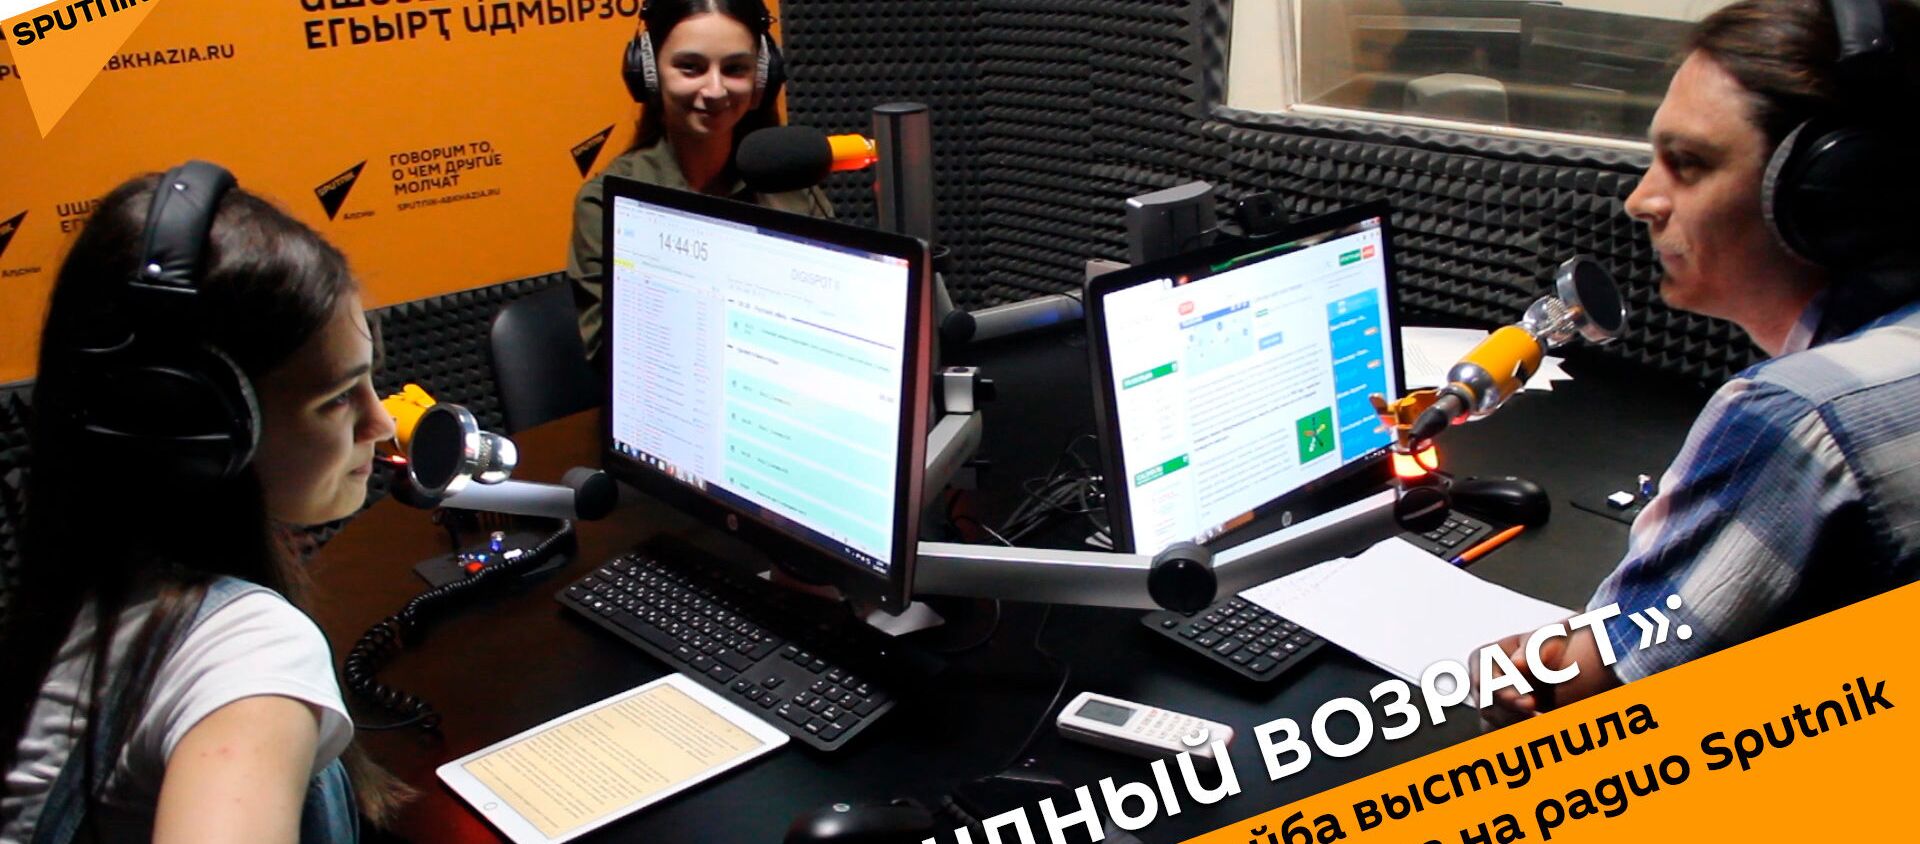 «Нетрудный возраст»: как Лера Адлейба выступила в новом амплуа на радио Sputnik - Sputnik Абхазия, 1920, 01.06.2019